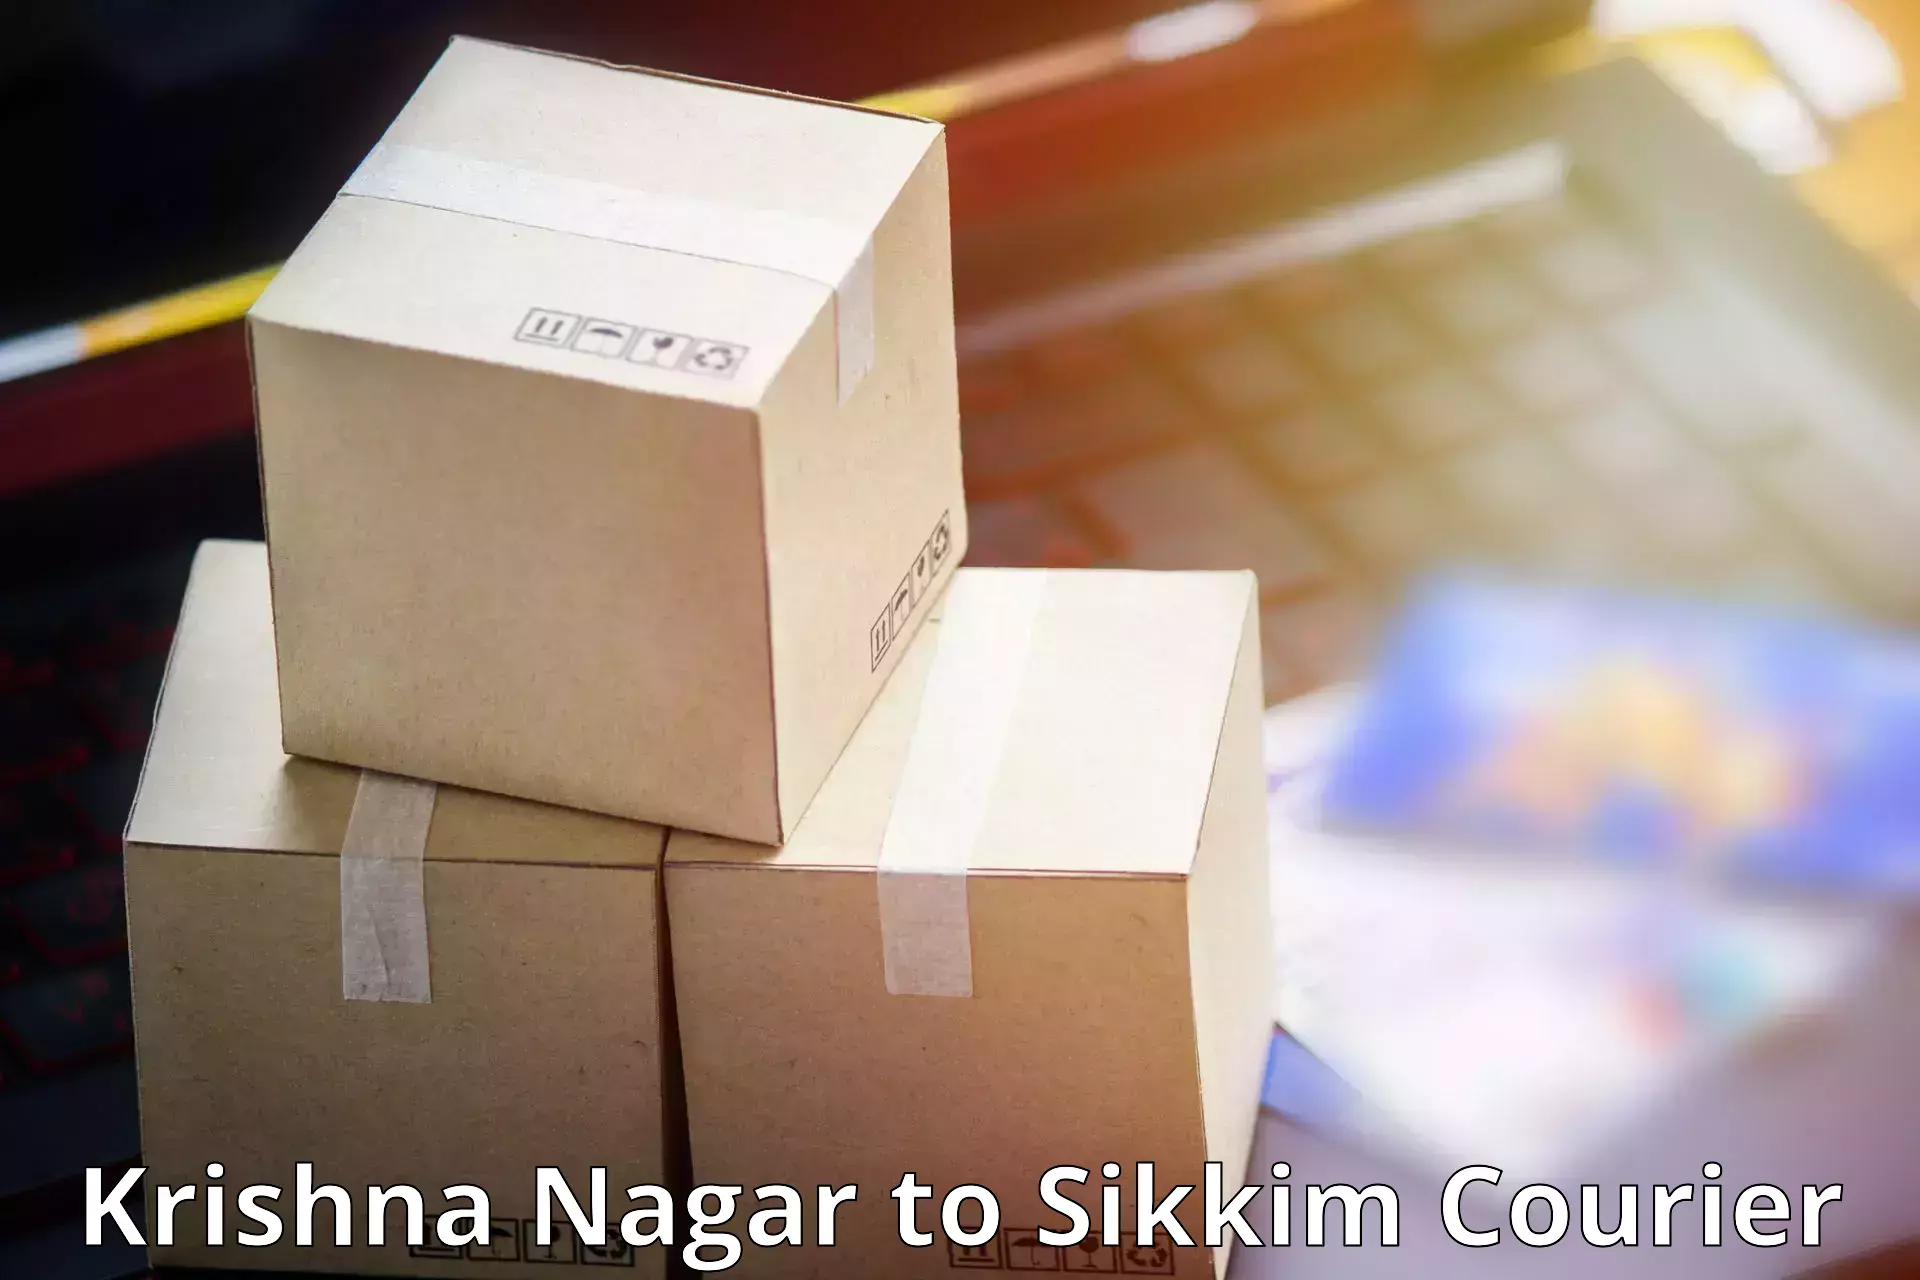 Lightweight courier Krishna Nagar to East Sikkim